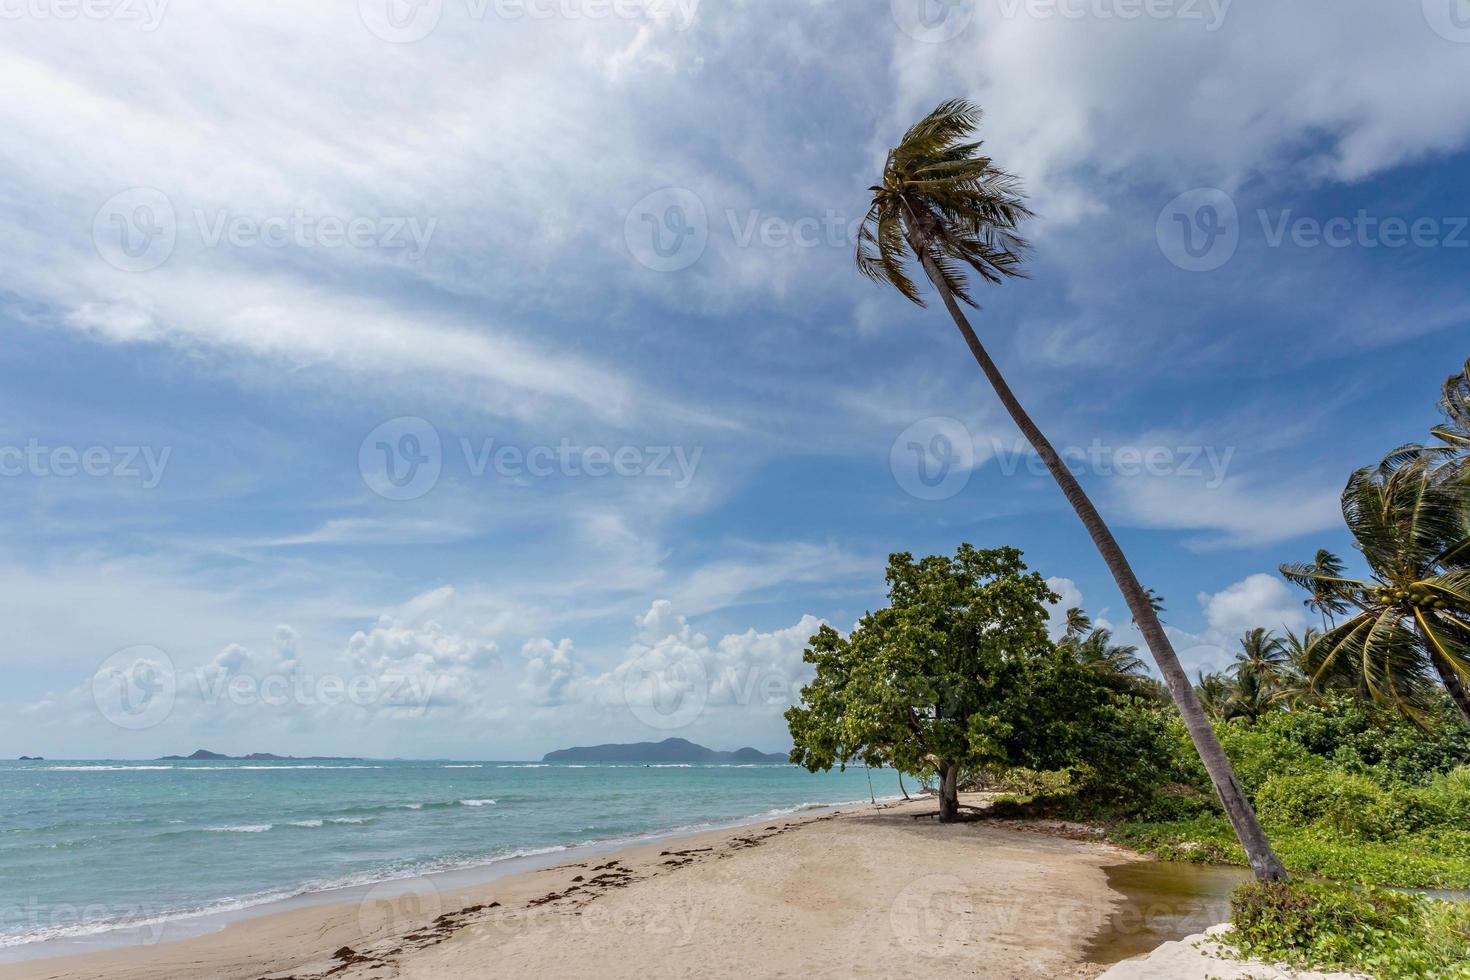 vista al mar desde la playa tropical con cielo soleado. playa paraíso de verano de la isla de koh samui. costa tropical. mar tropical en tailandia. playa exótica de verano con nubes en el horizonte. foto